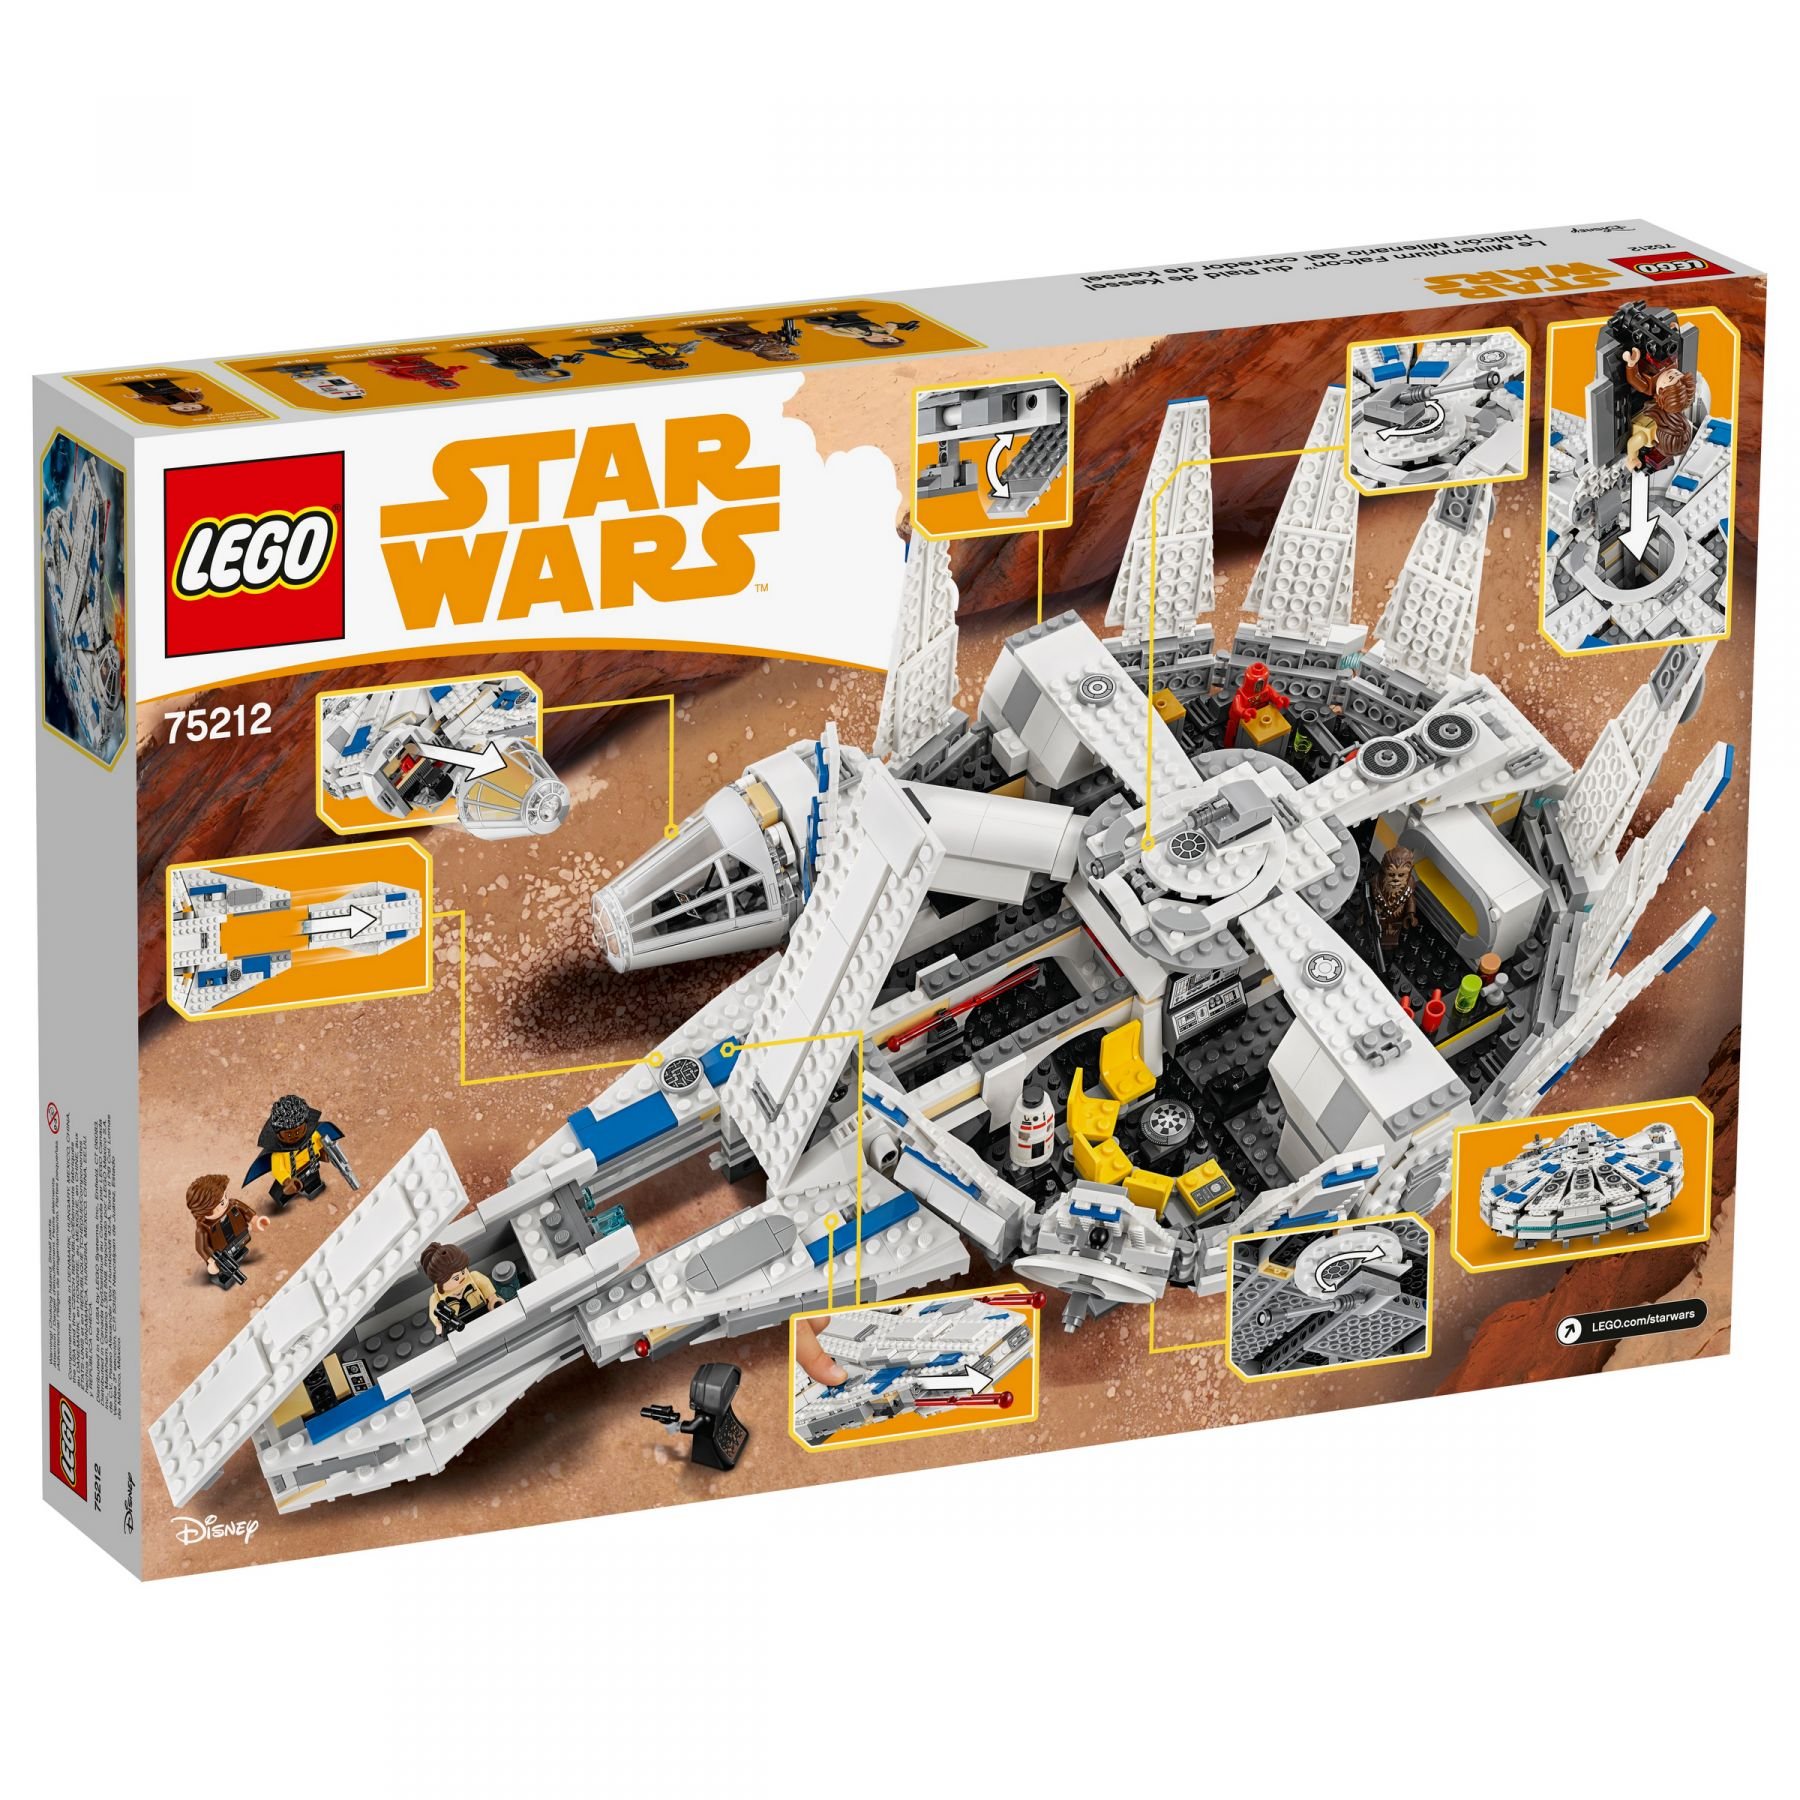 LEGO Star Wars 75212 Kessel Run Millennium Falcon™ LEGO_75212_alt4.jpg